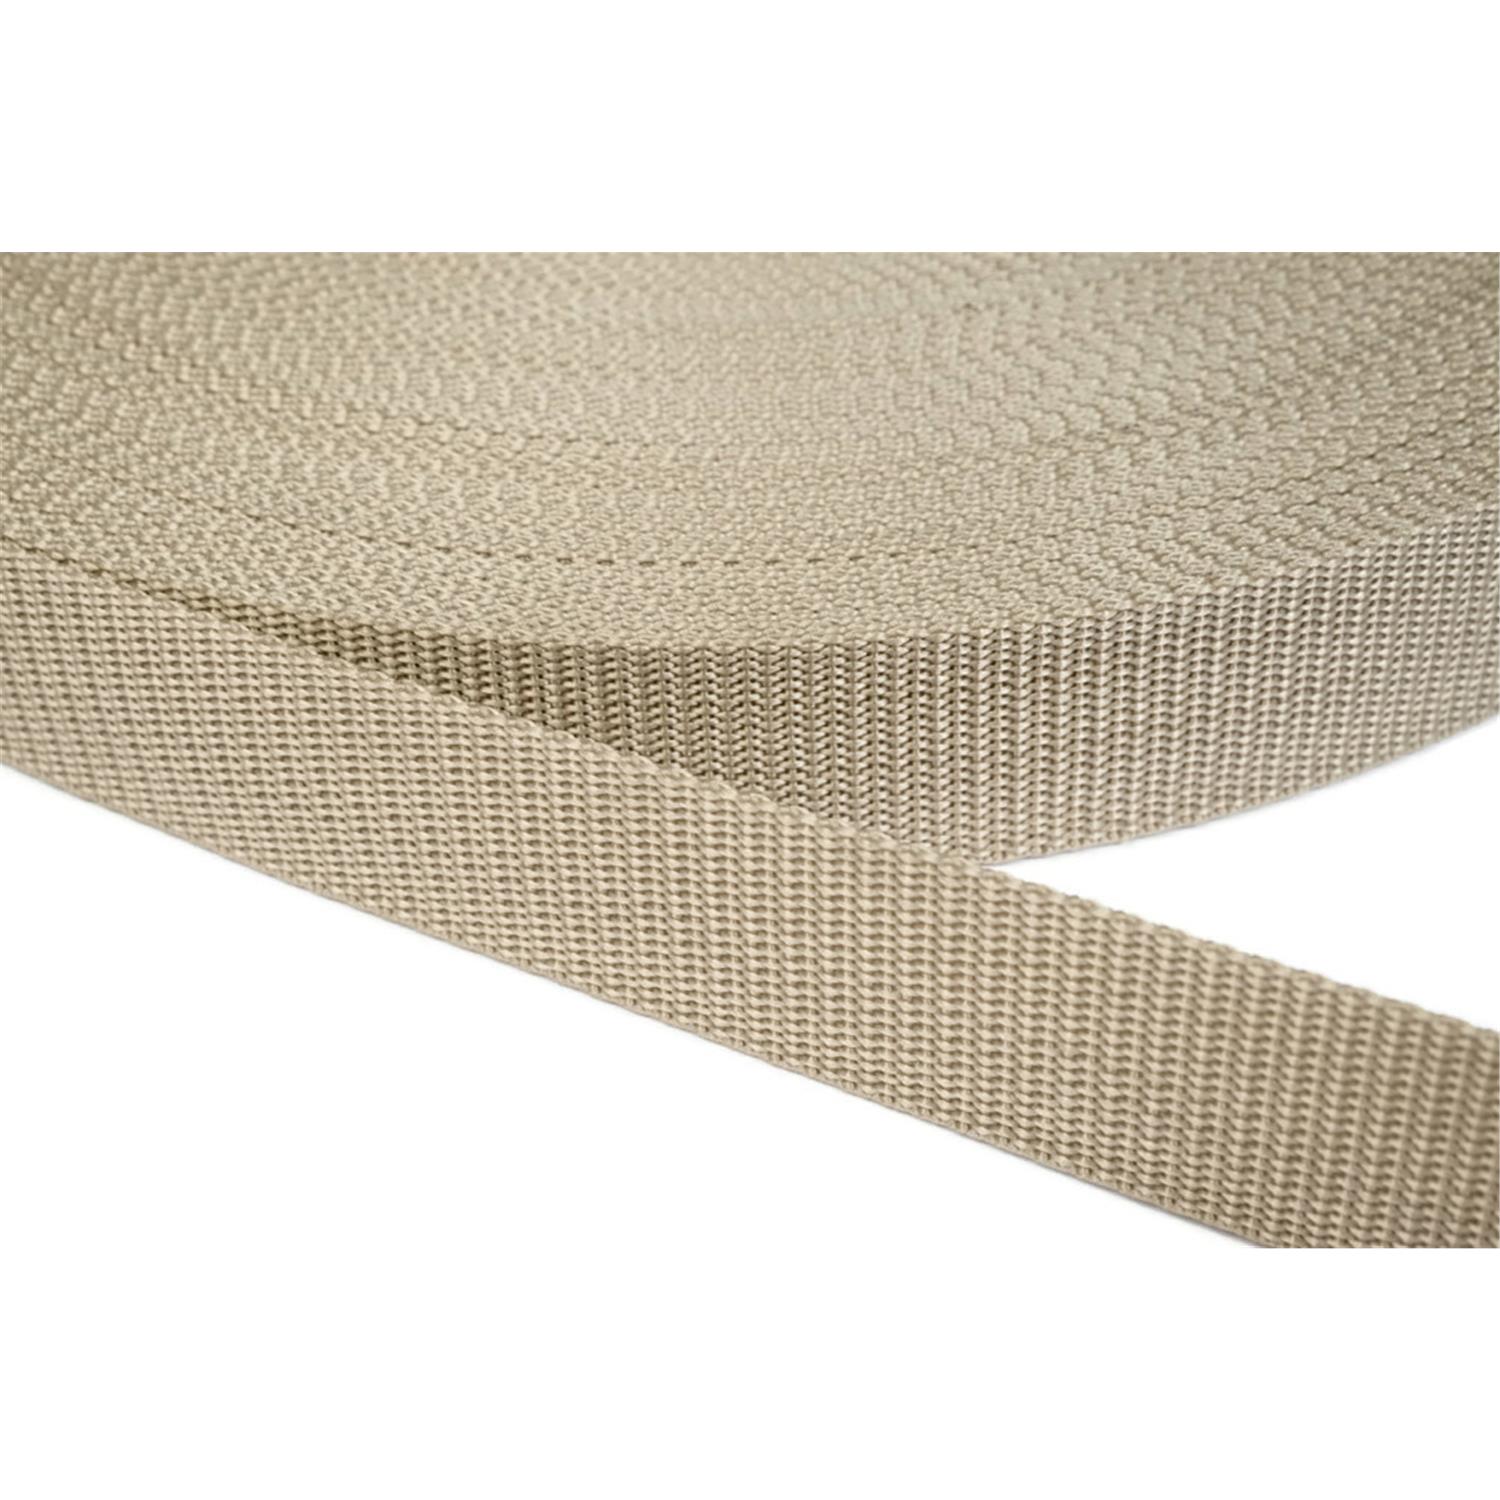 Gurtband 10mm breit aus Polypropylen in 41 Farben 03 - beige 12 Meter